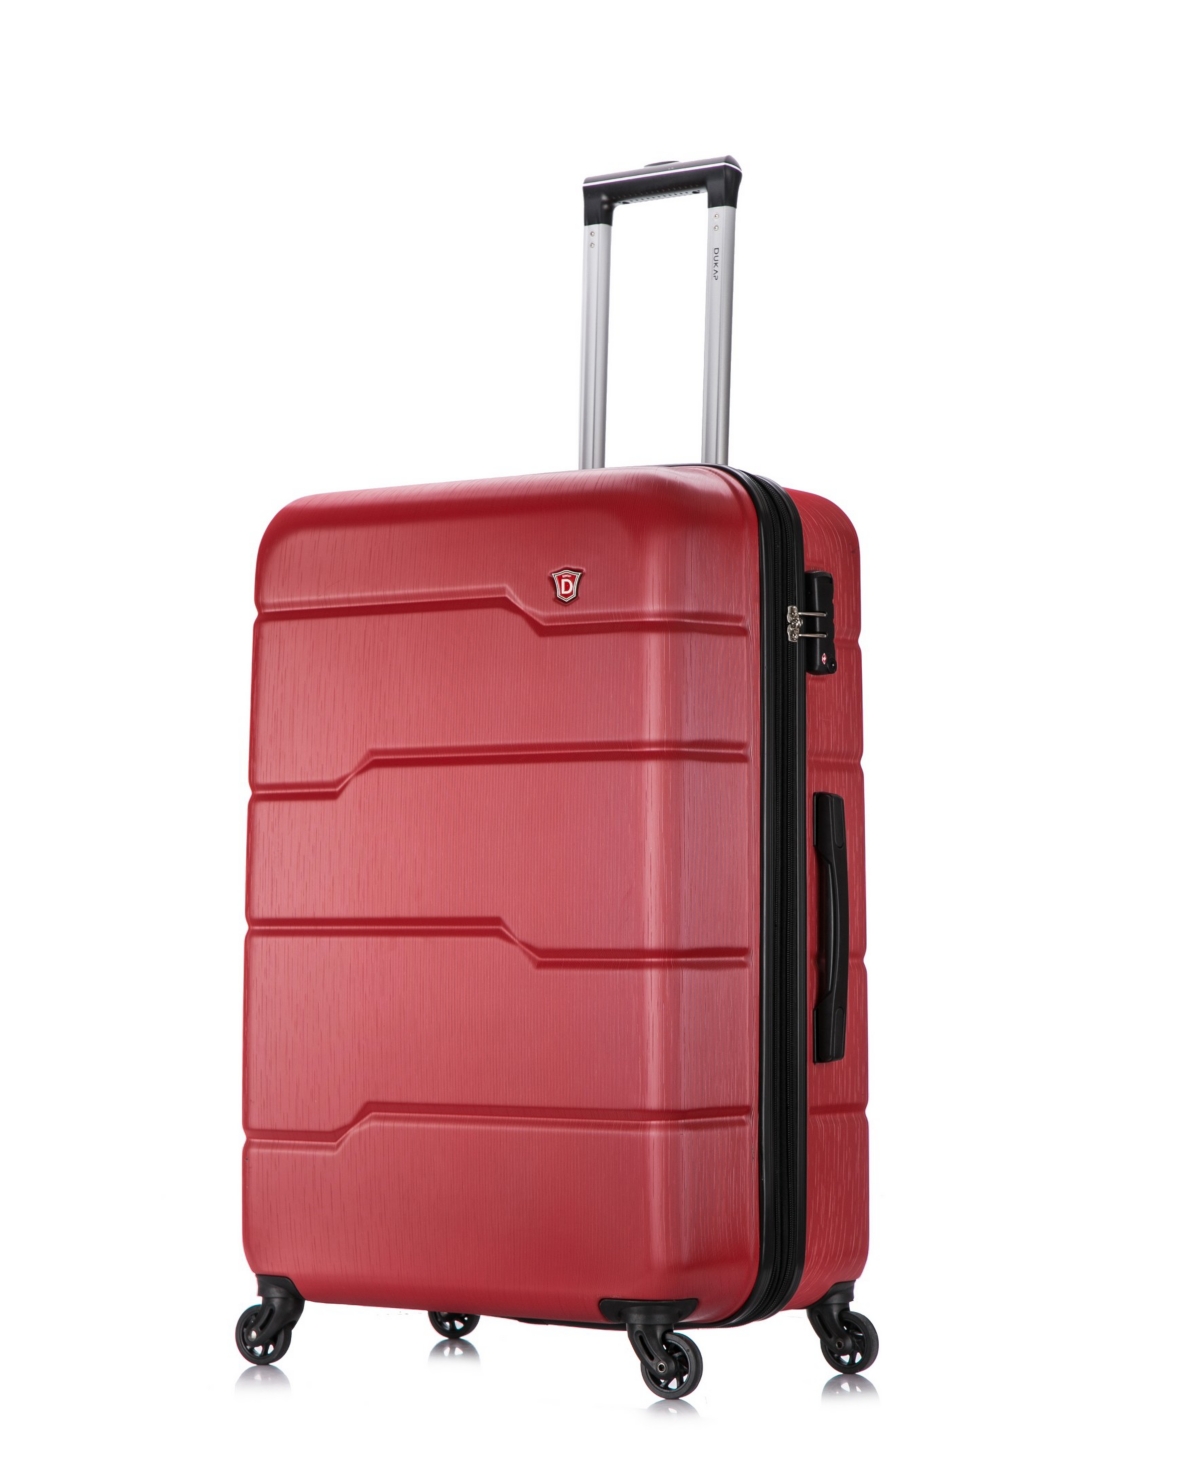 Rodez 28" Lightweight Hardside Spinner Luggage - Rose Gold